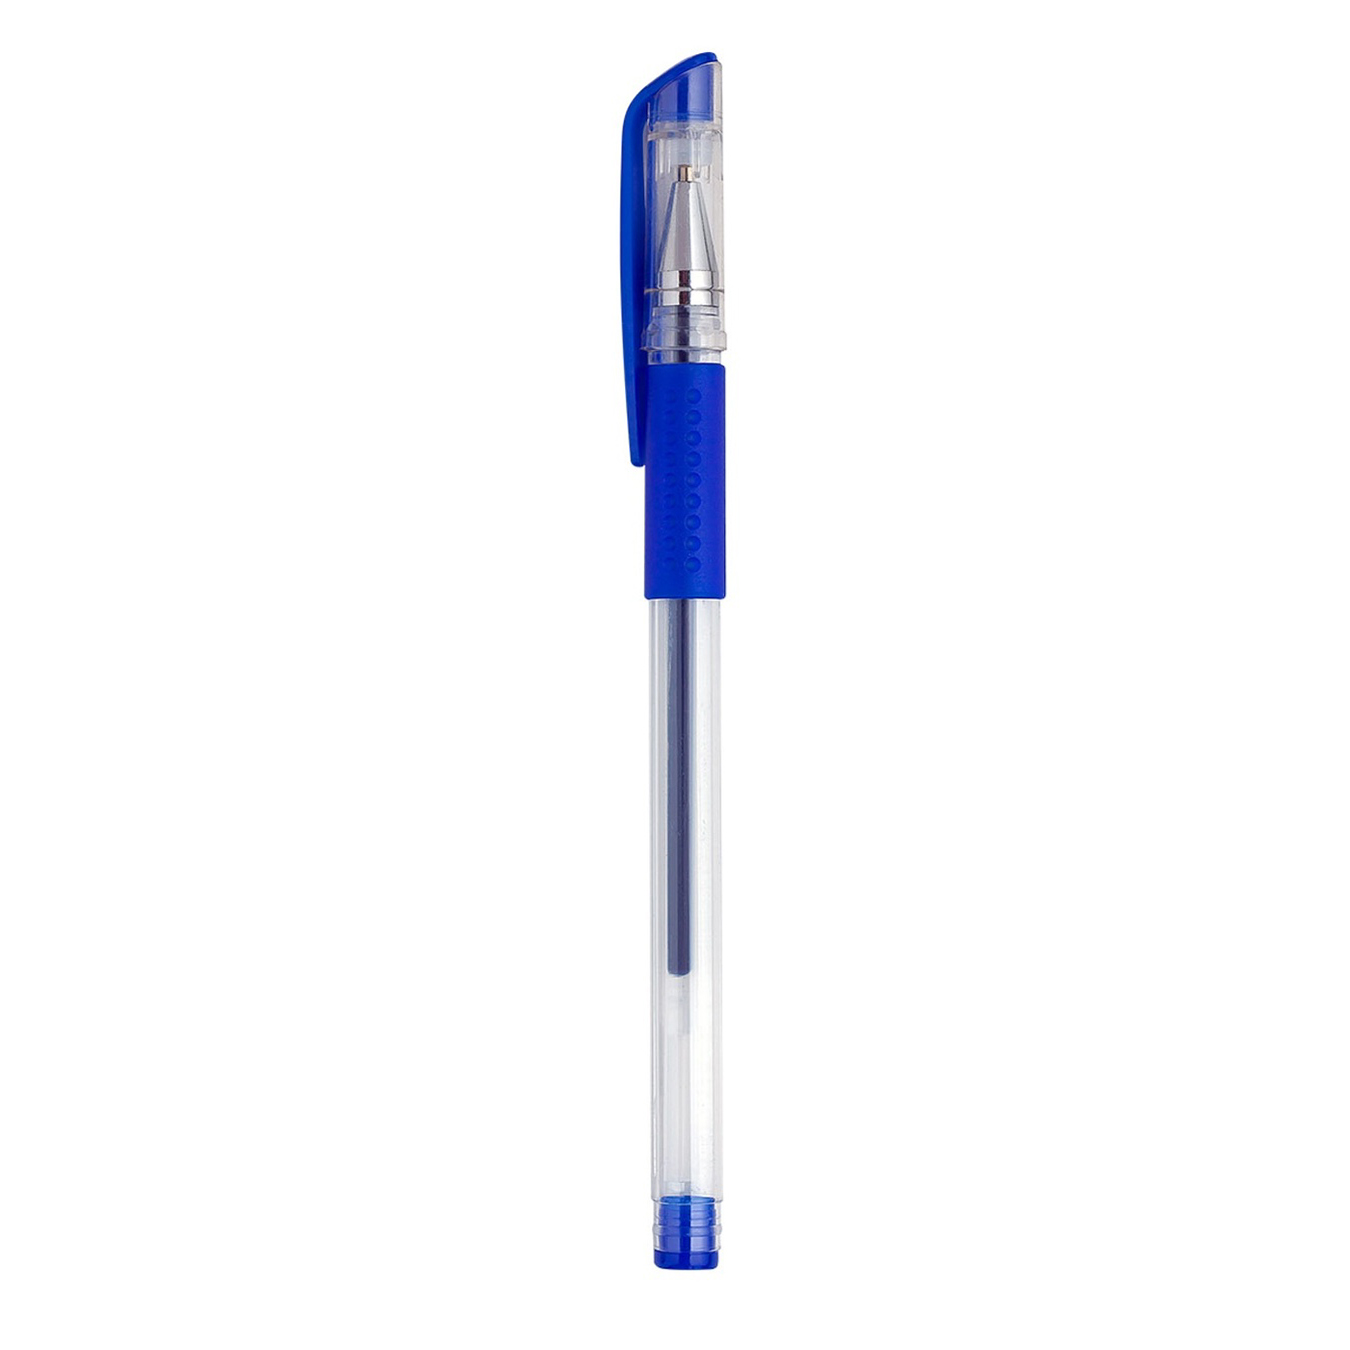 Ручки BuroMax синие гелевые набор из 3 шт.